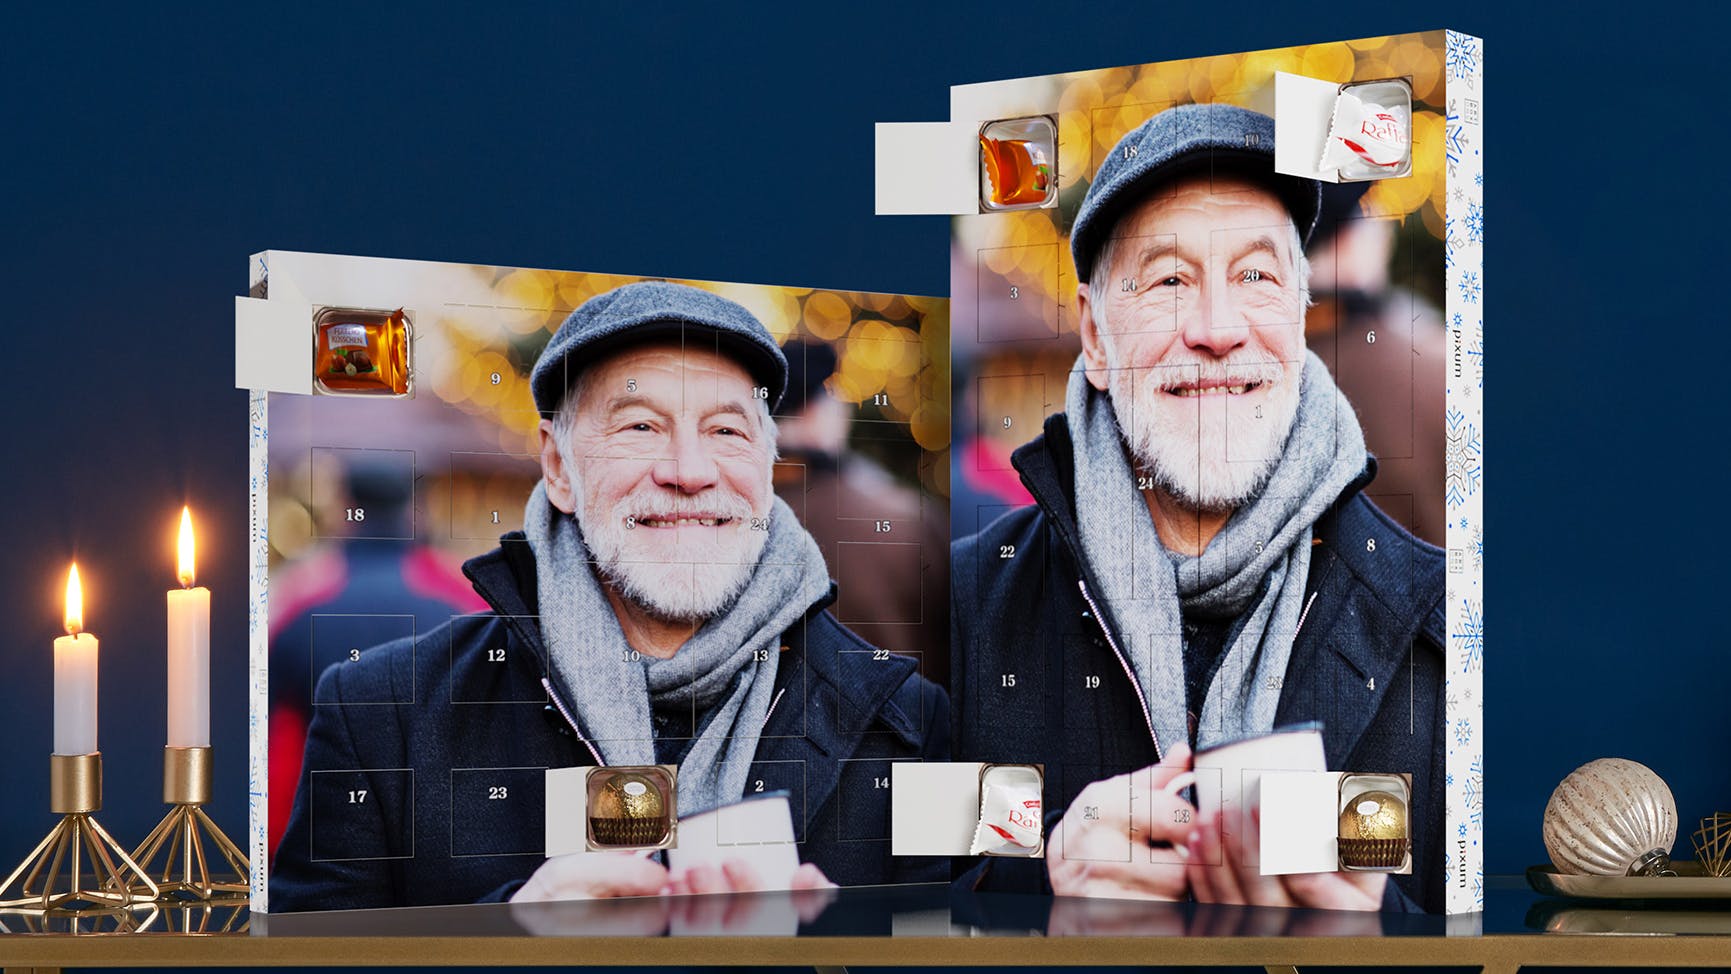 Calendario dell'Avvento personalizzato con cioccolatini Ferrero e foto di un uomo sorridente